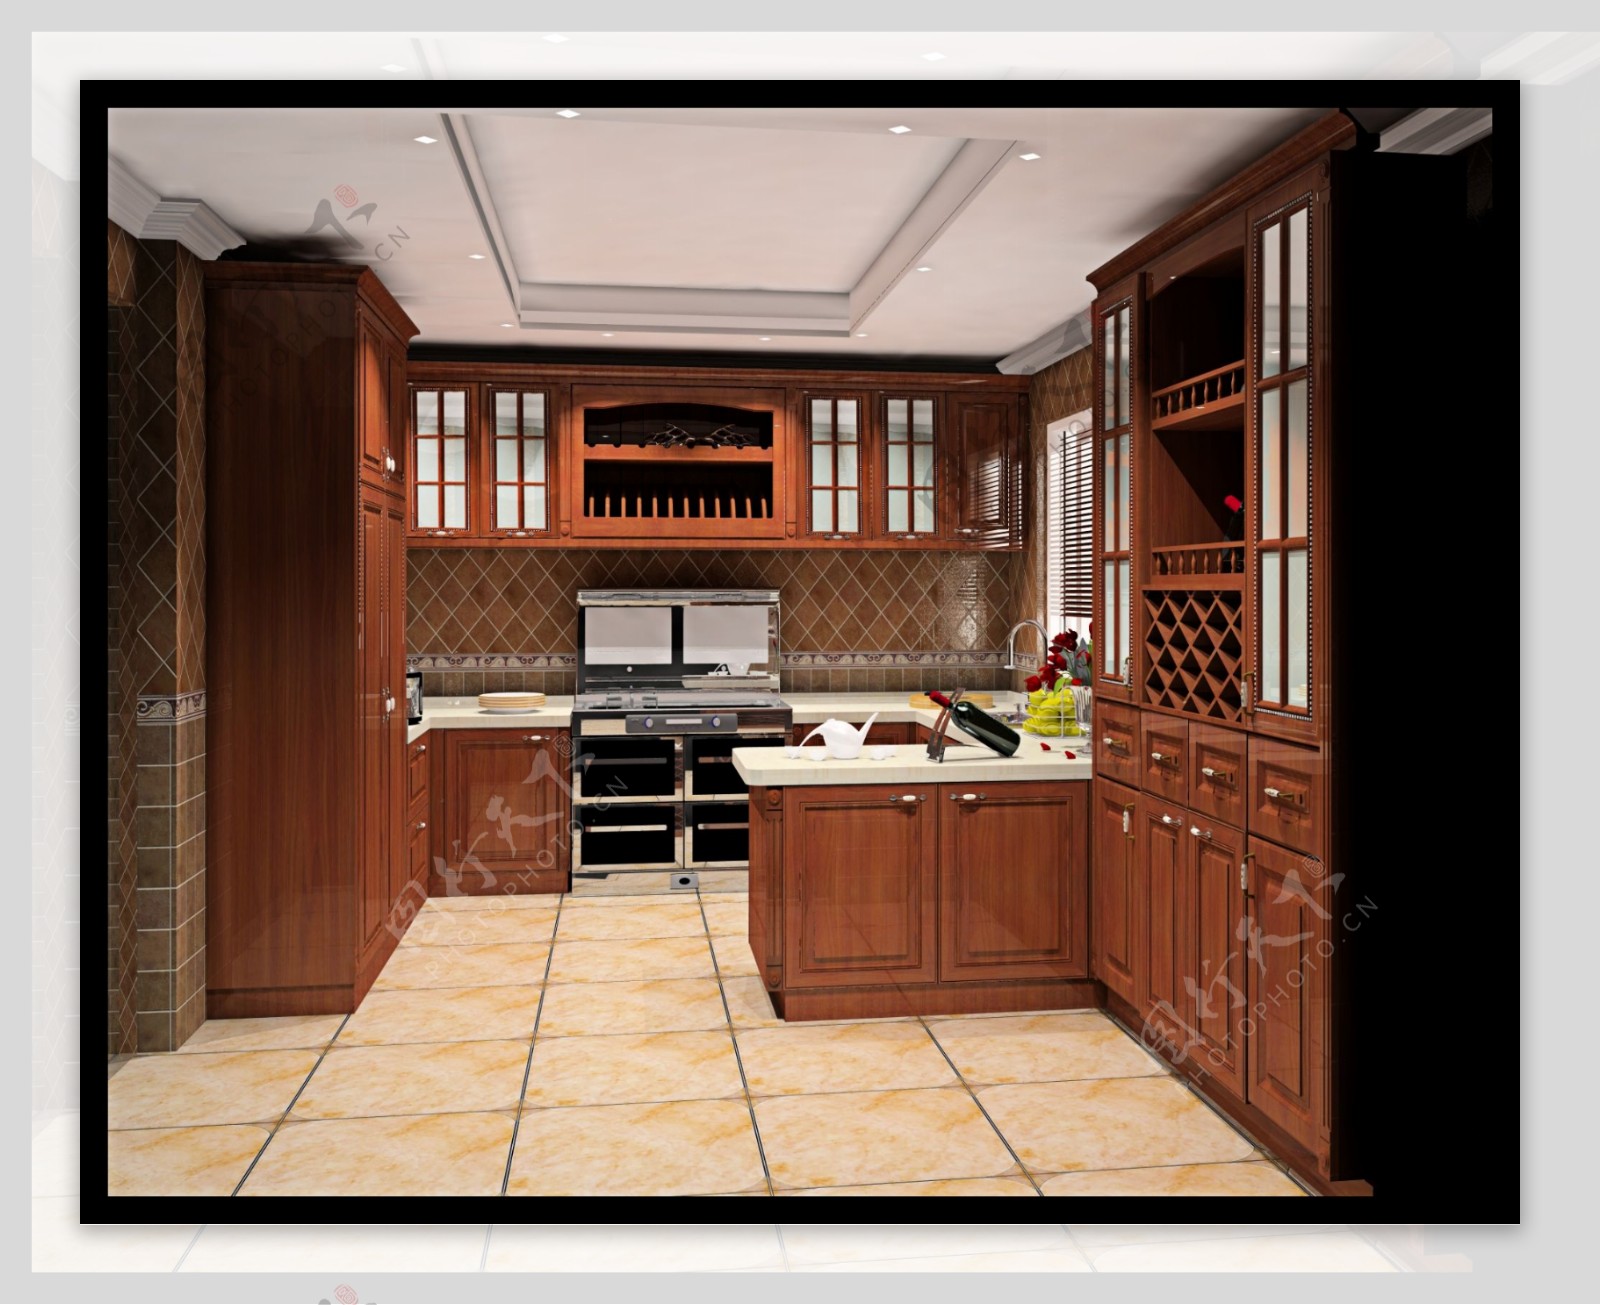 欧式原木深色厨房图片